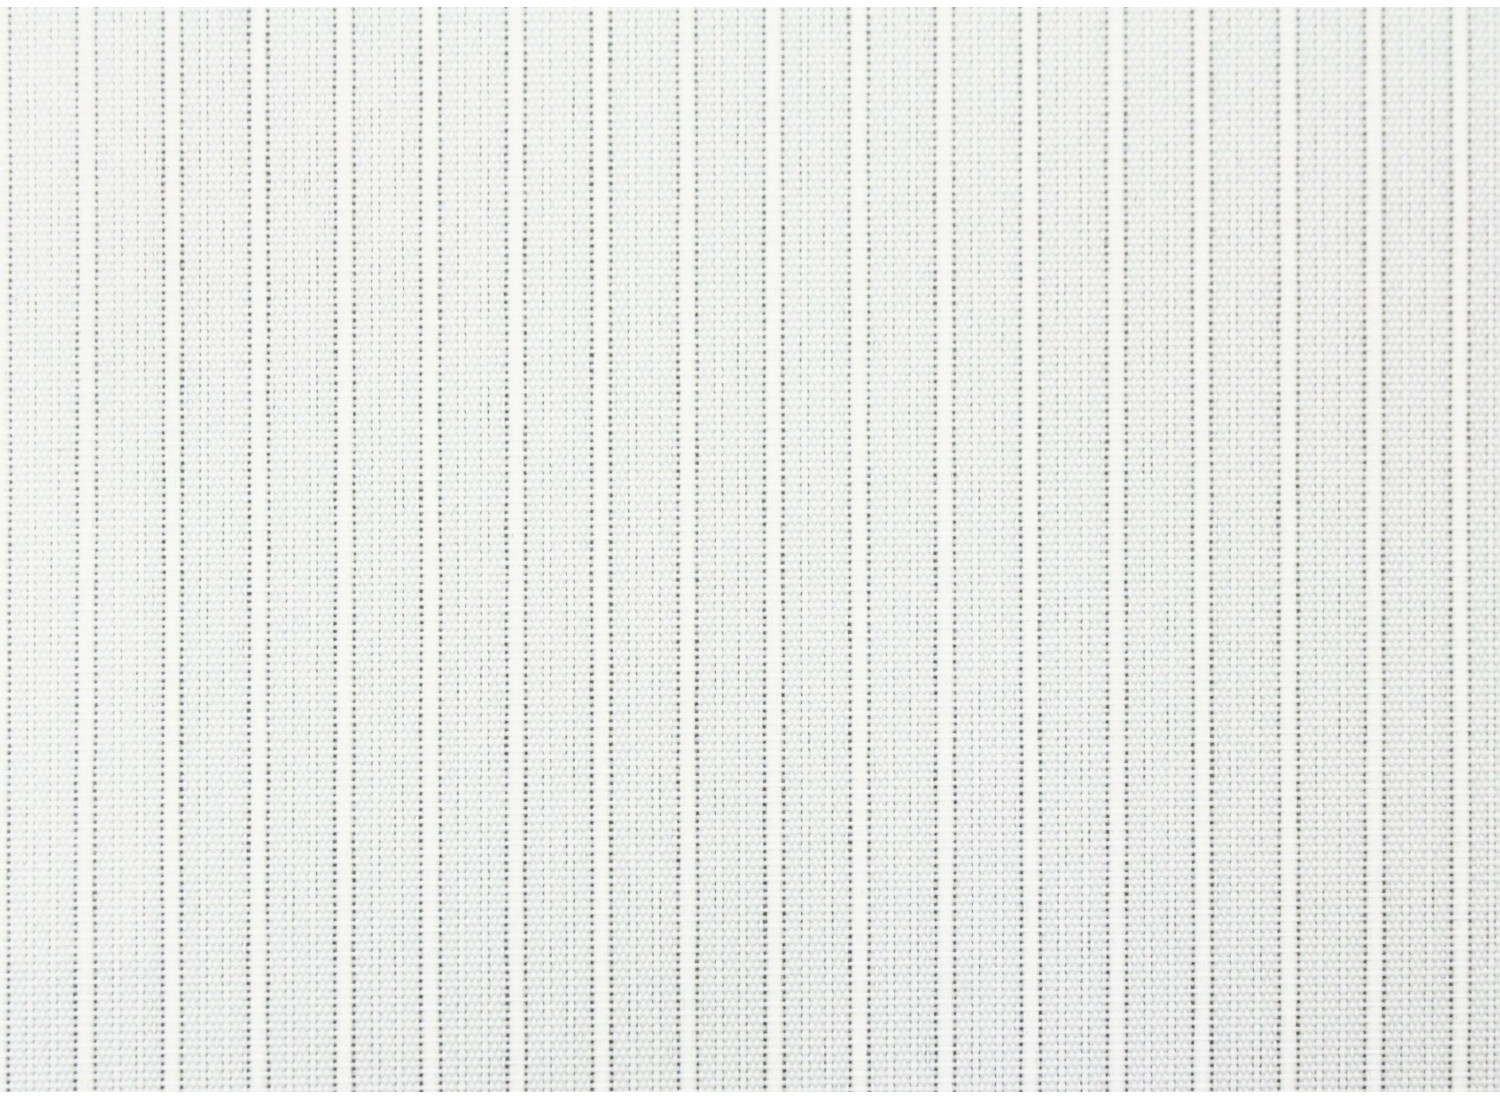 Lamellenvorhang-Set 127 mm Weiß gestreift 250 cm x 260 cm